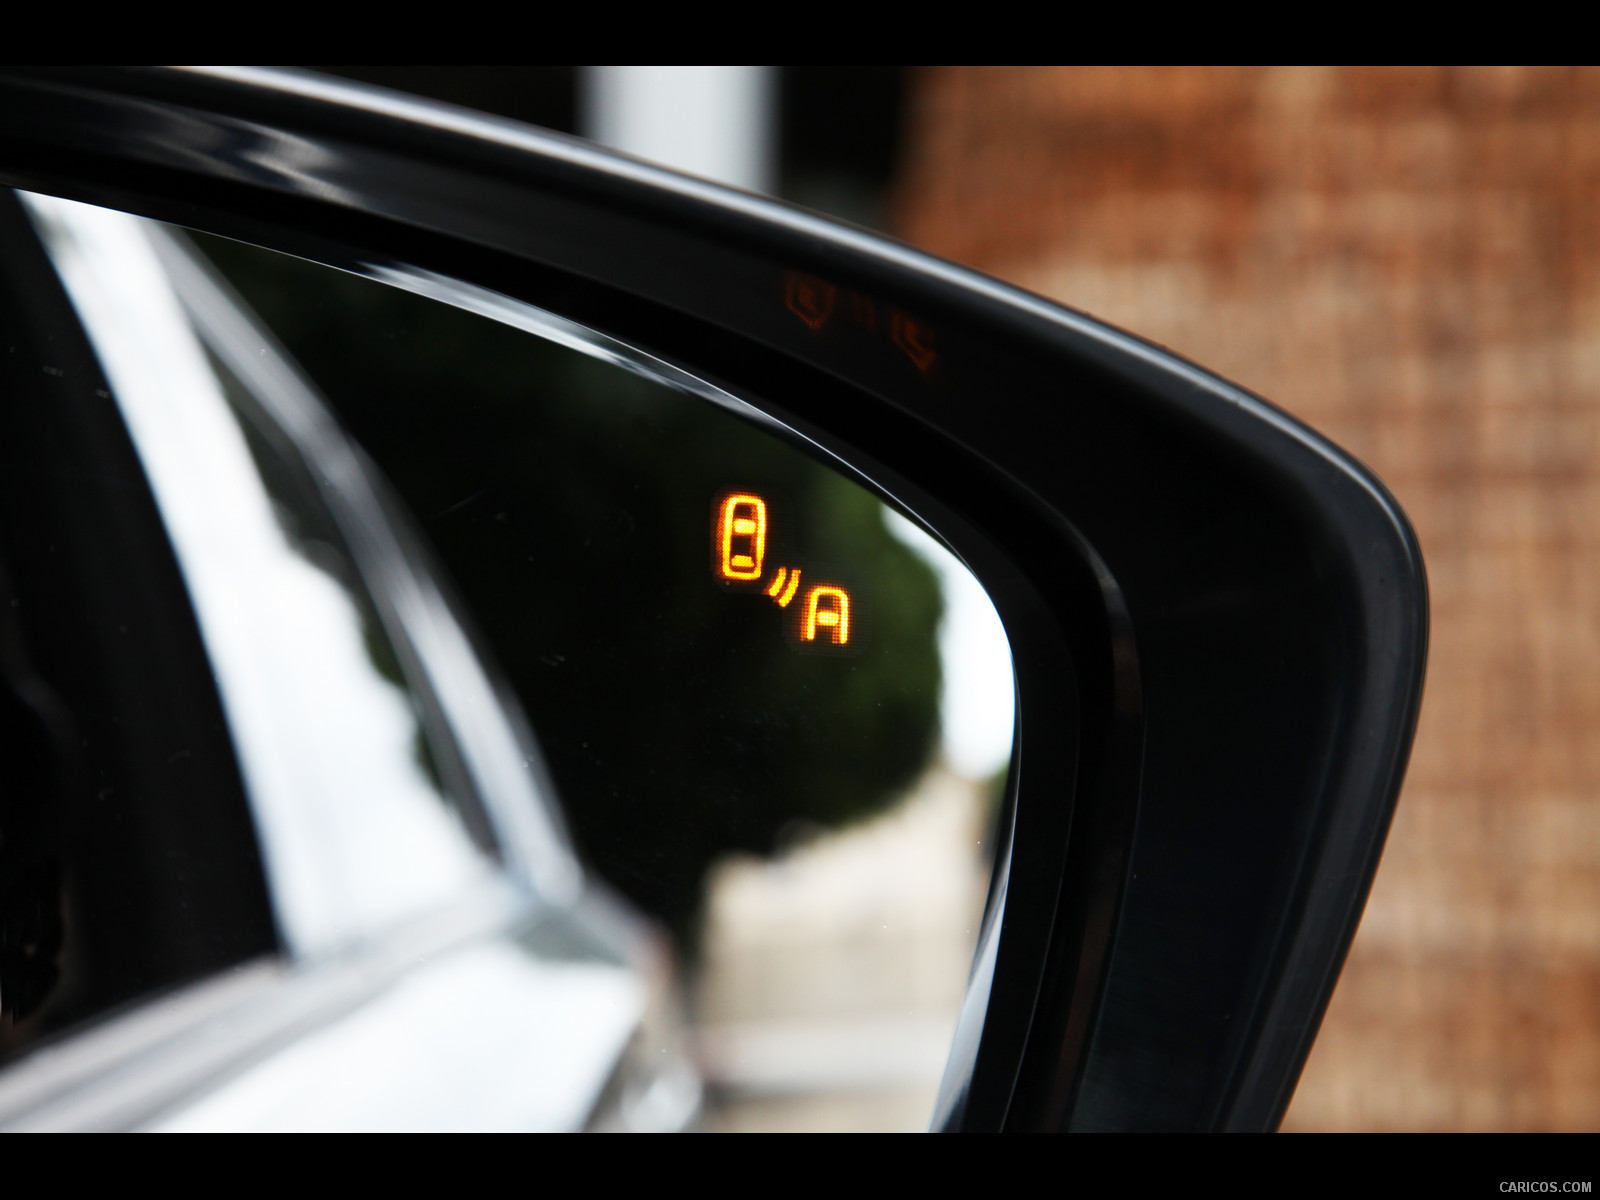 2013 Mazda CX-5 Blind Spot Warning - , #59 of 151